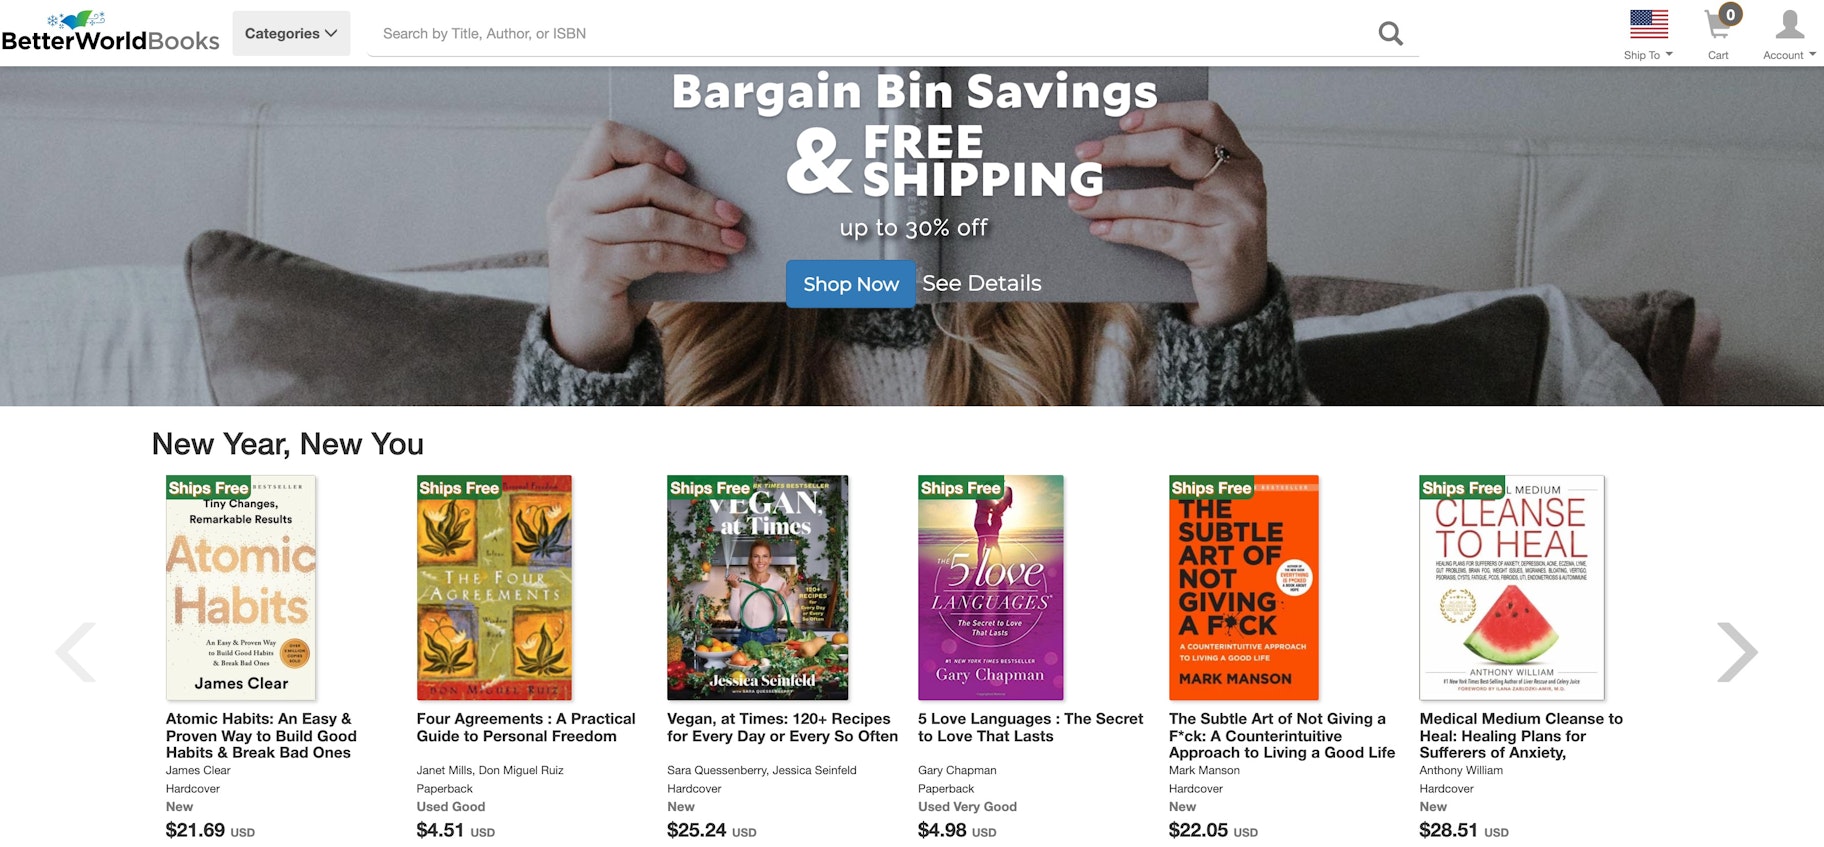 non-Amazon site for books: Better World Books